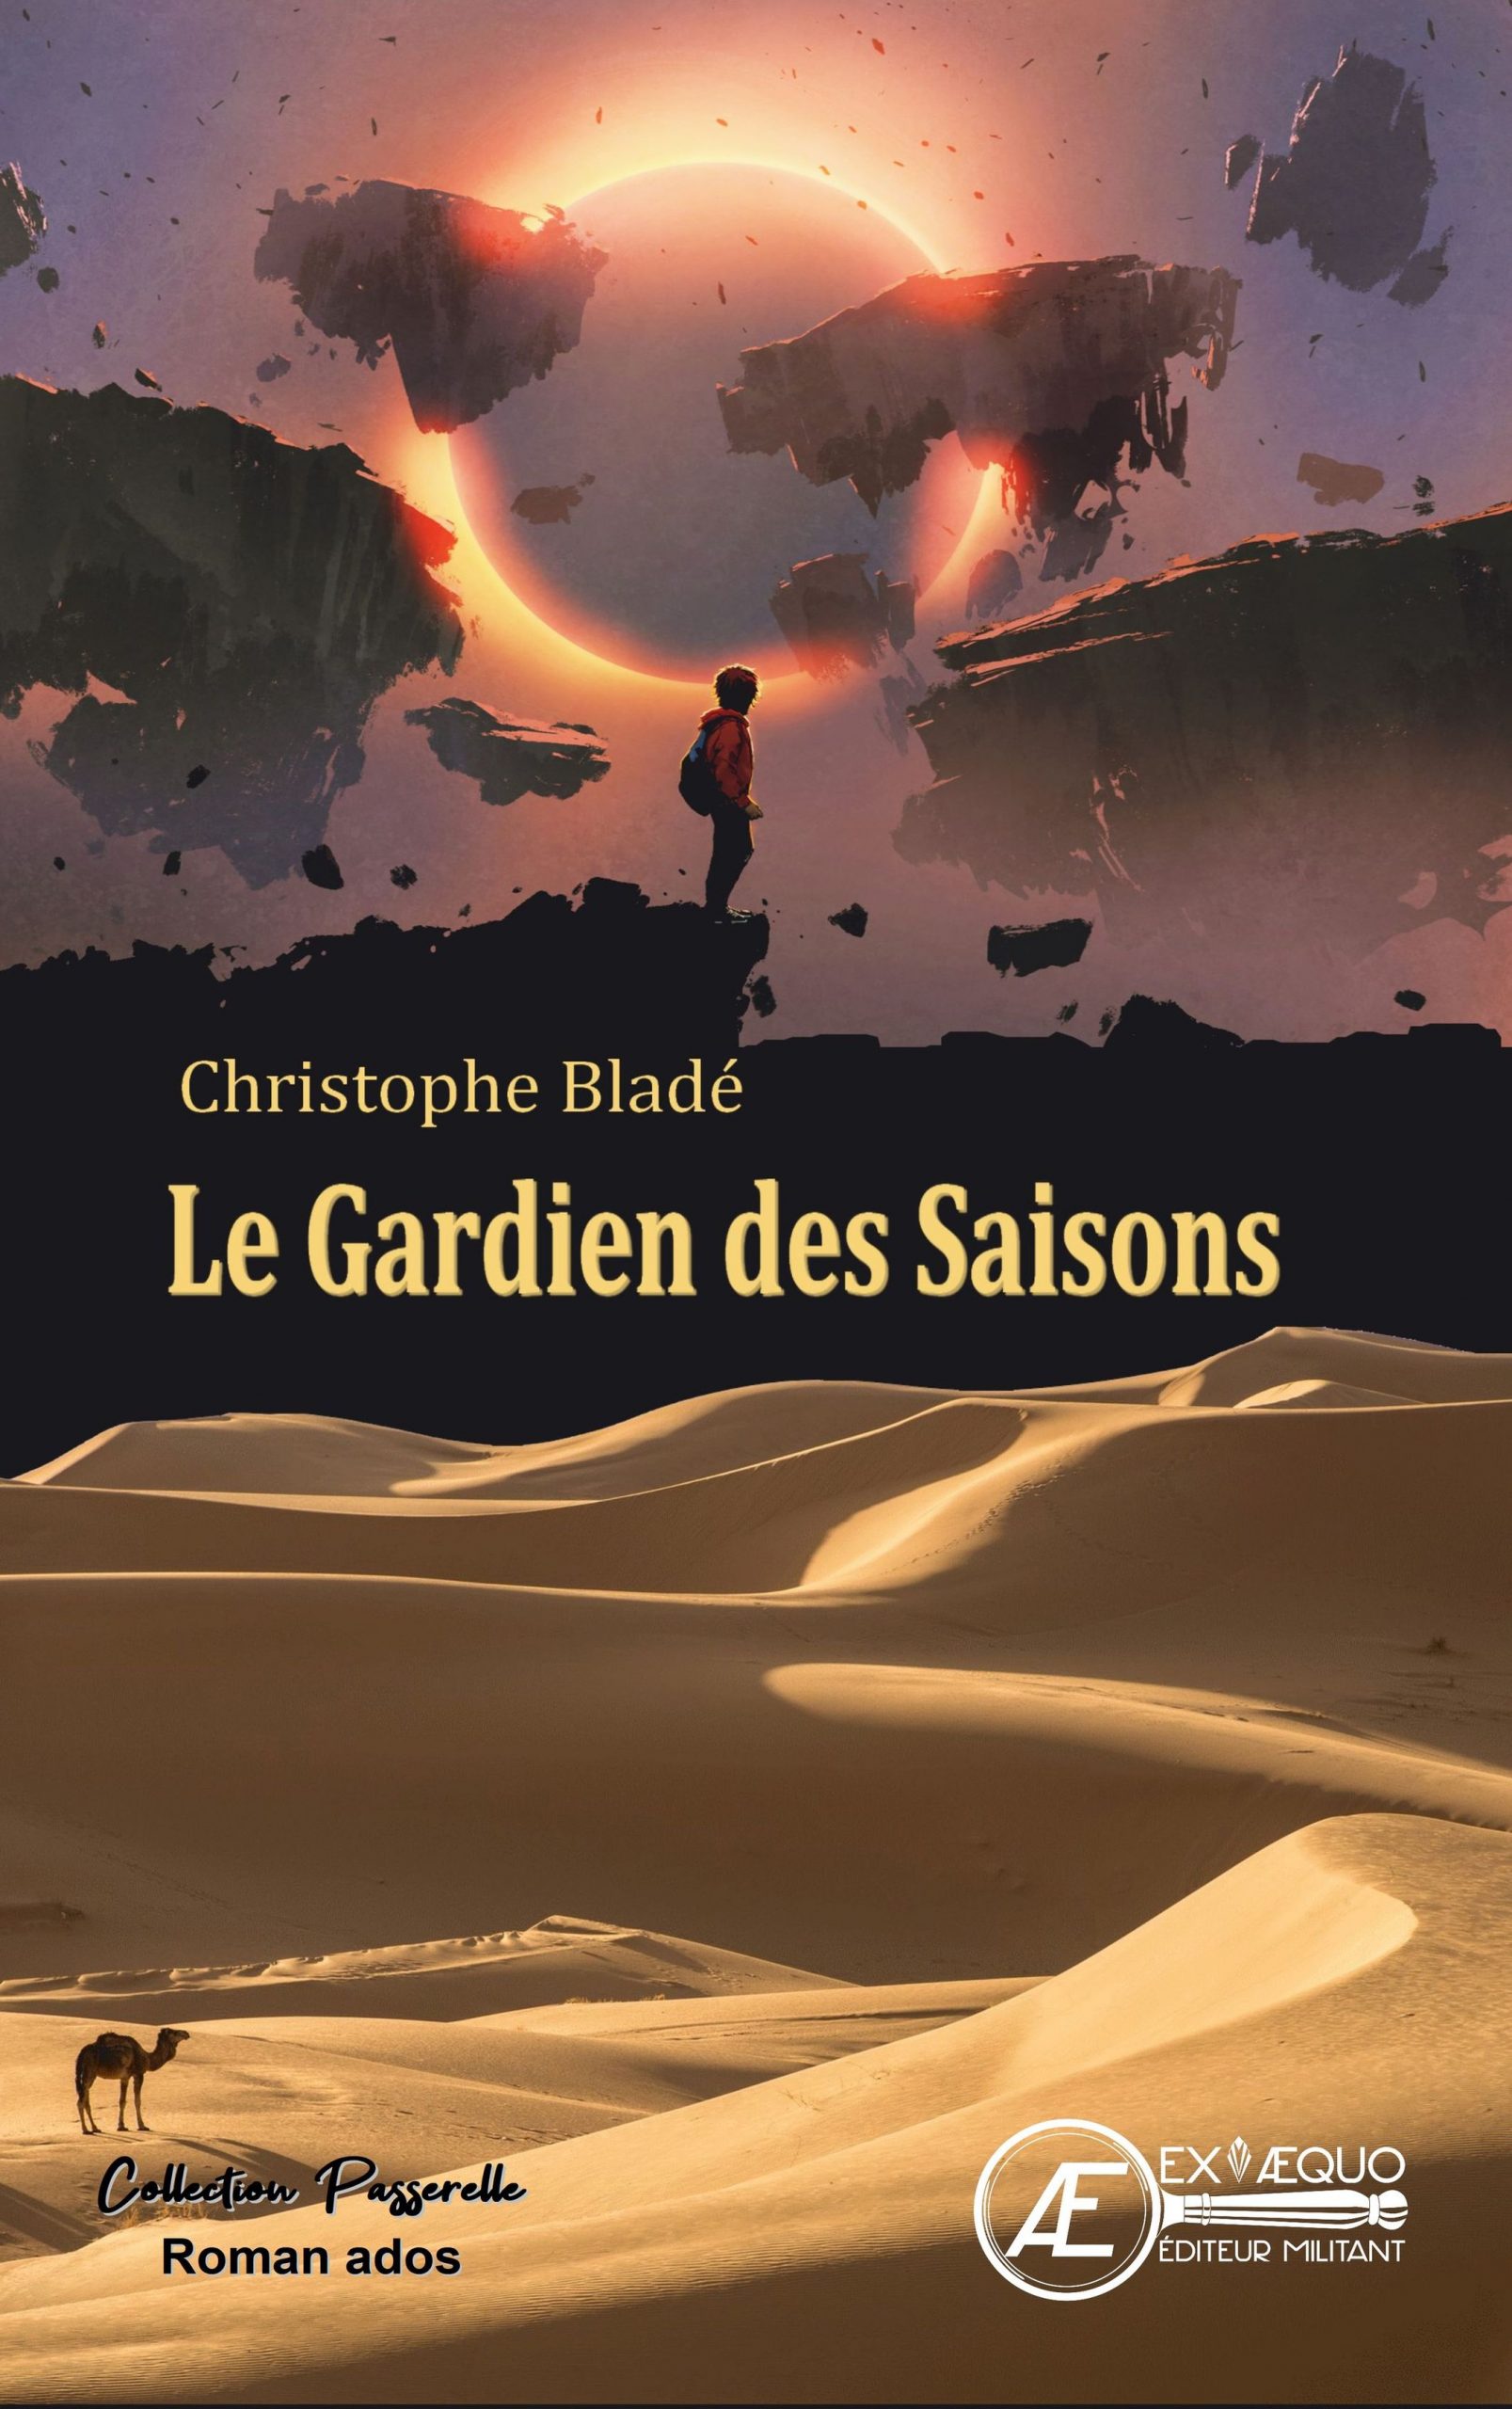 You are currently viewing Le Gardien des saisons, de Christophe Bladé